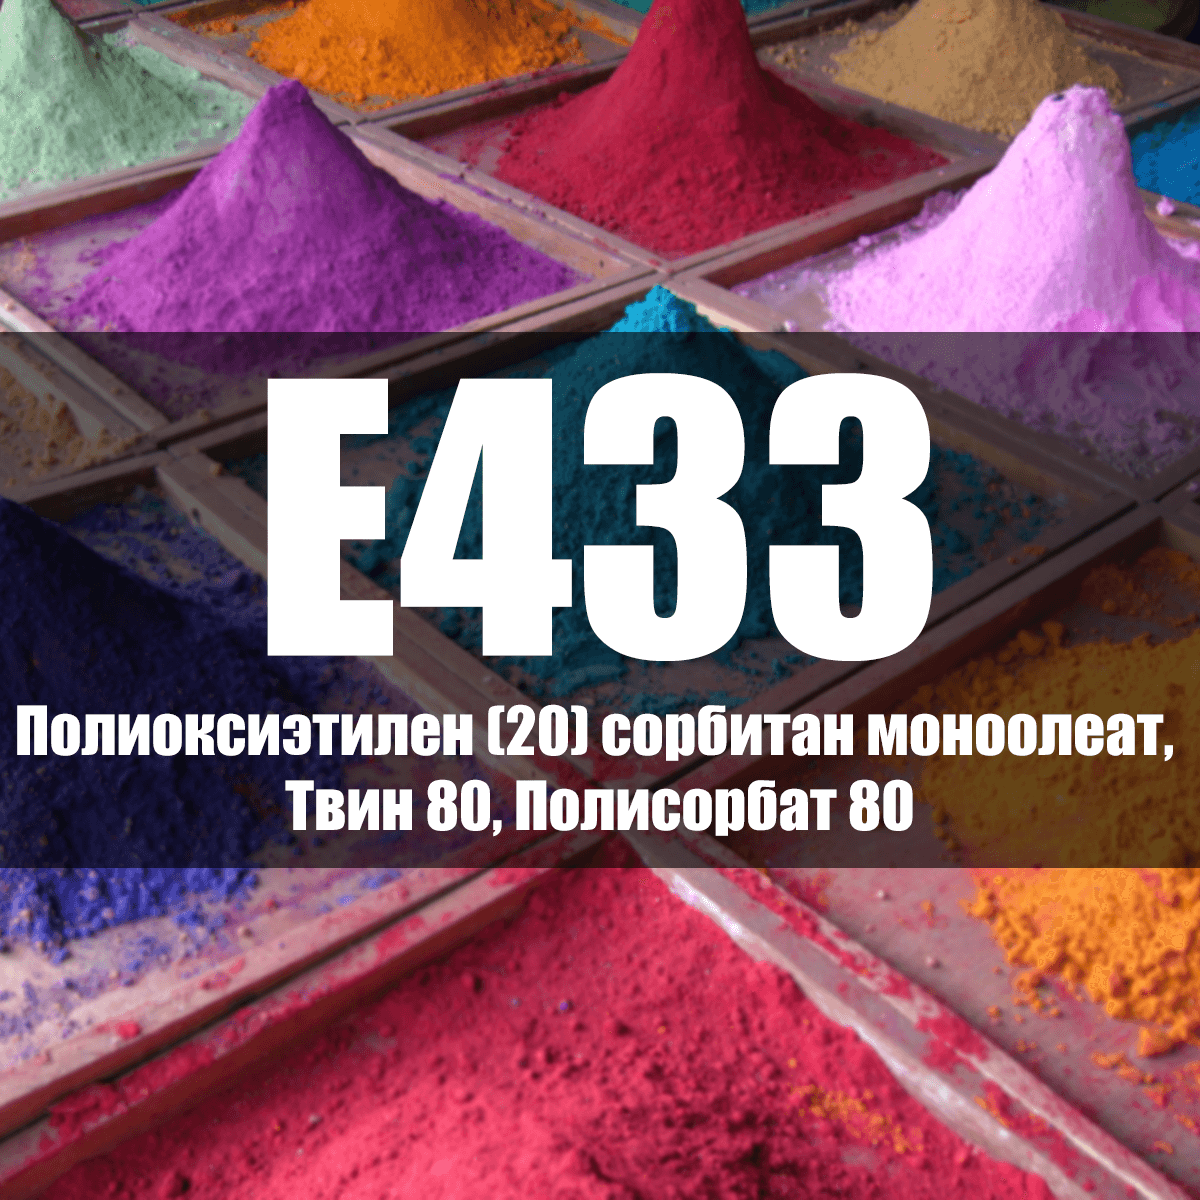 E432 Полиоксиэтилен 20 сорбитан монолаурат, твин 20 - описание пищевой добавки, польза и вред, использование